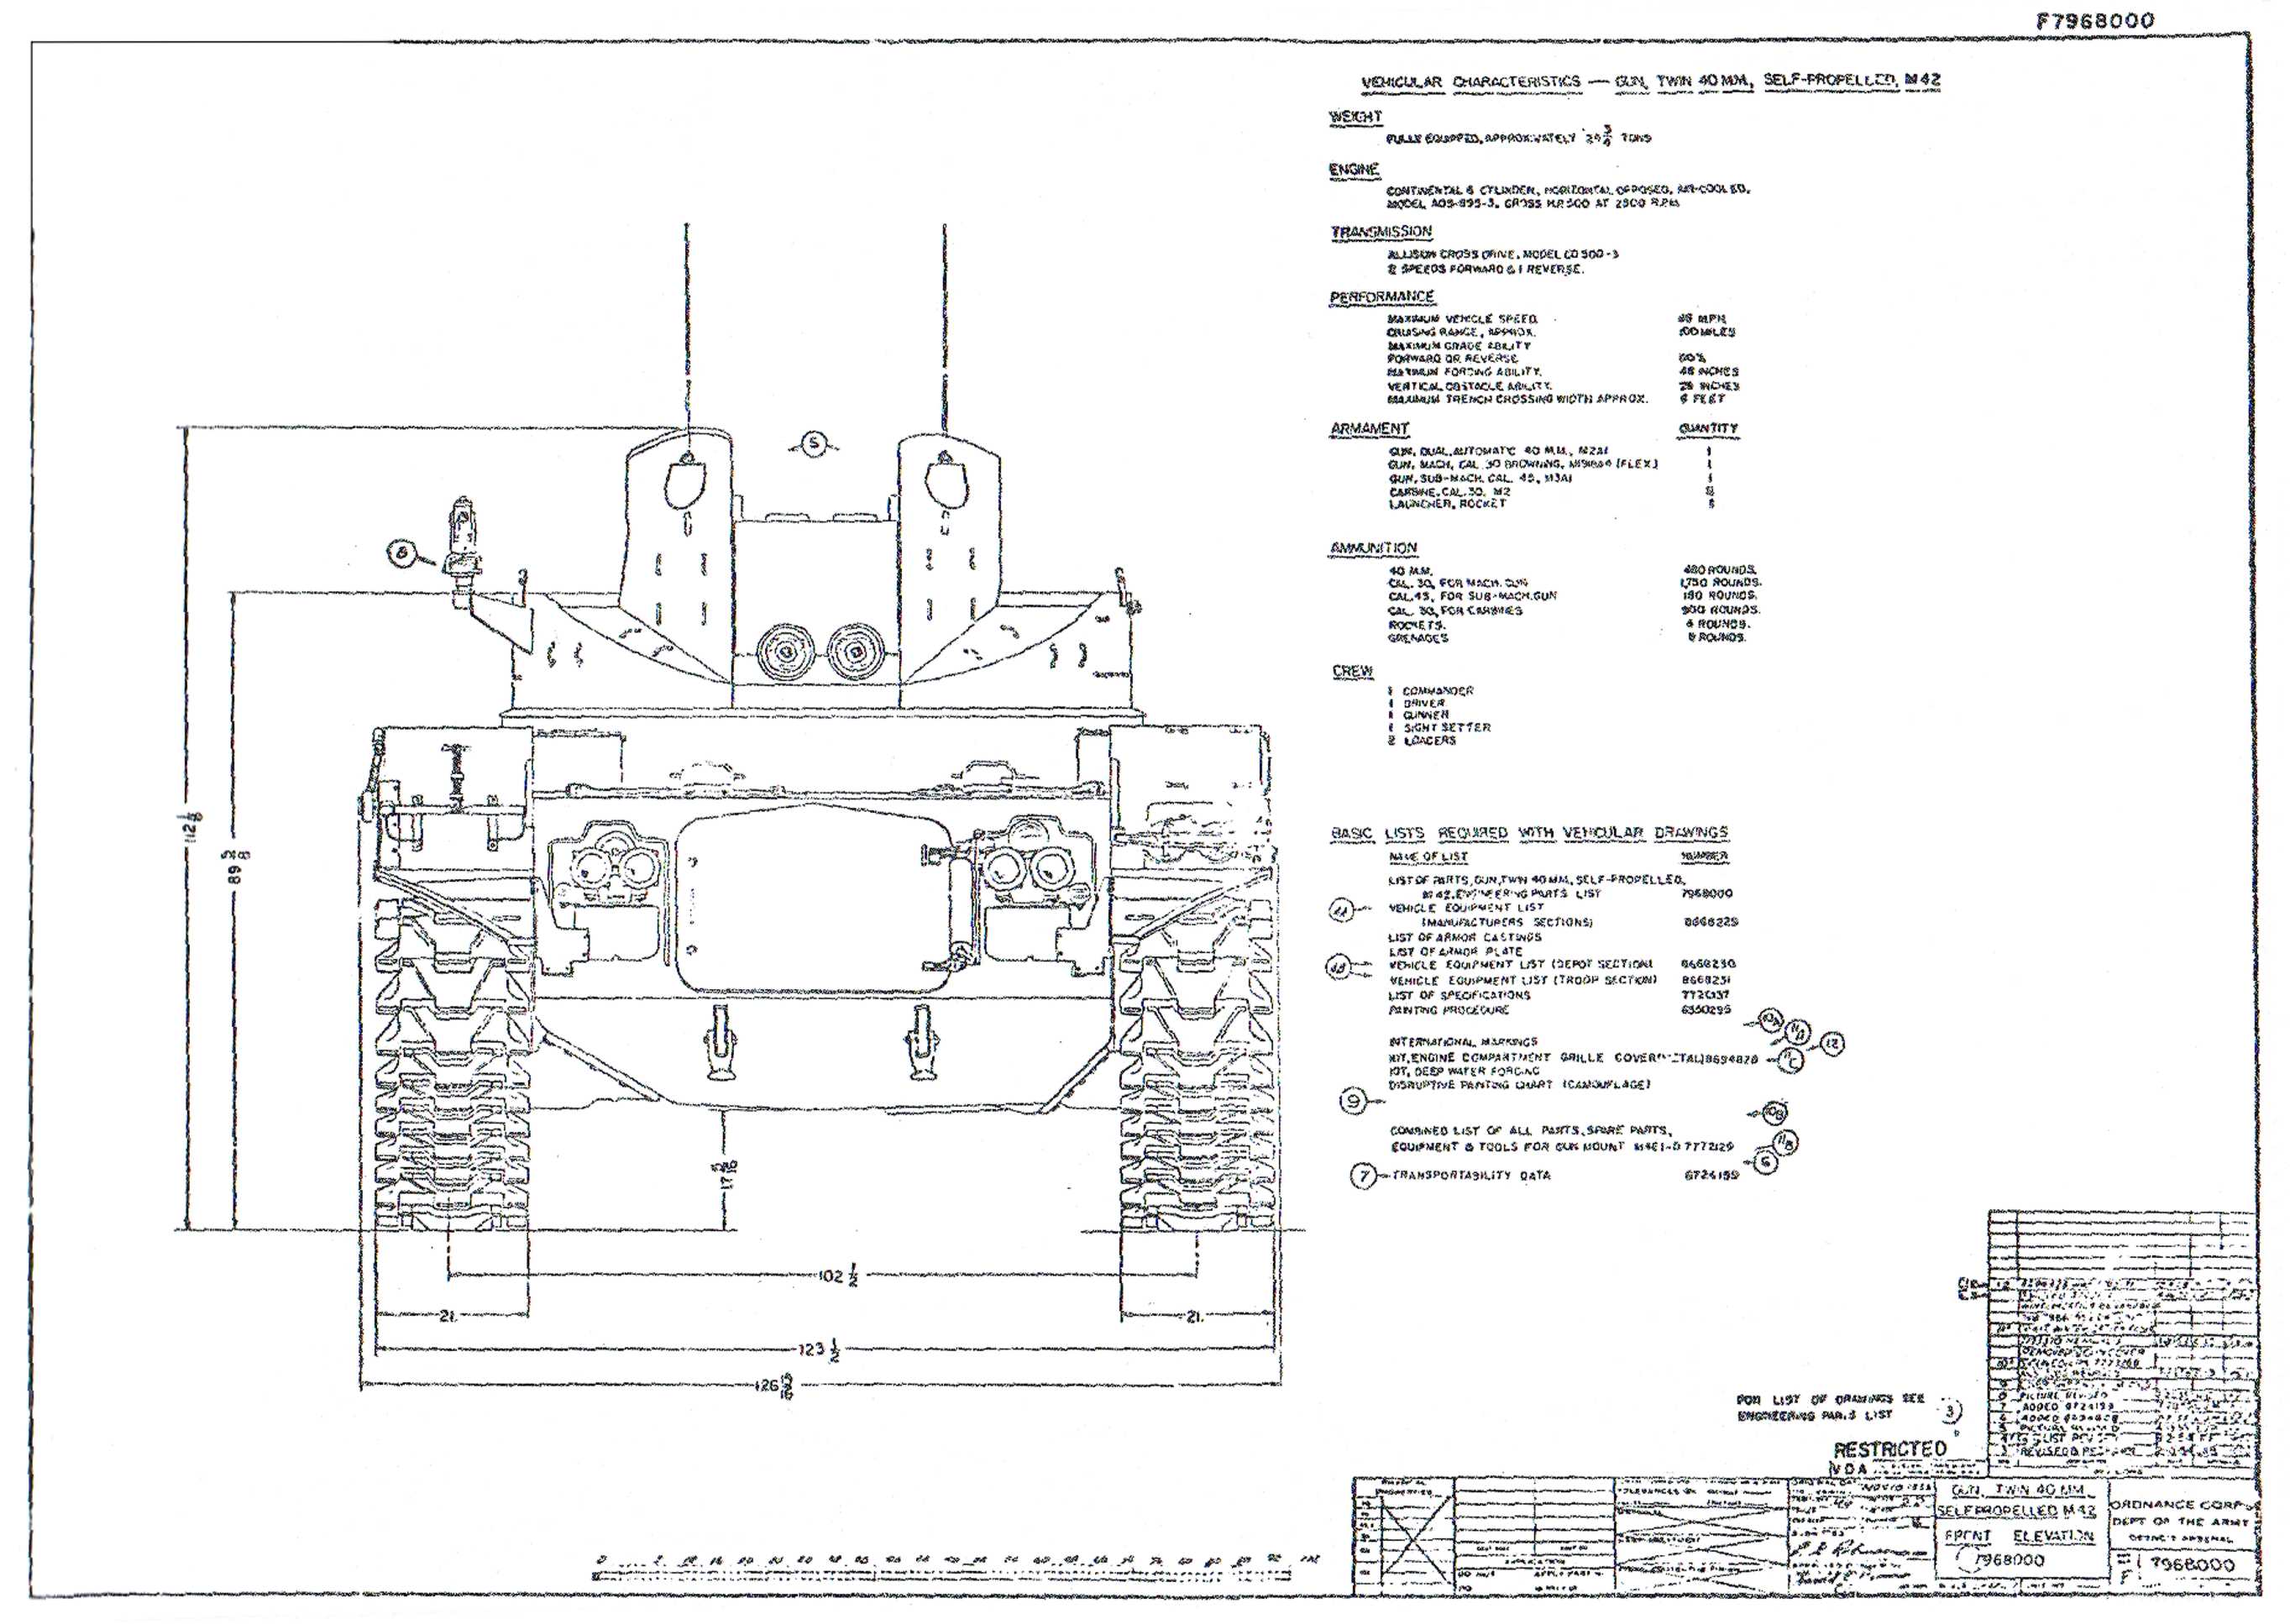 M42 1:35 scale plans